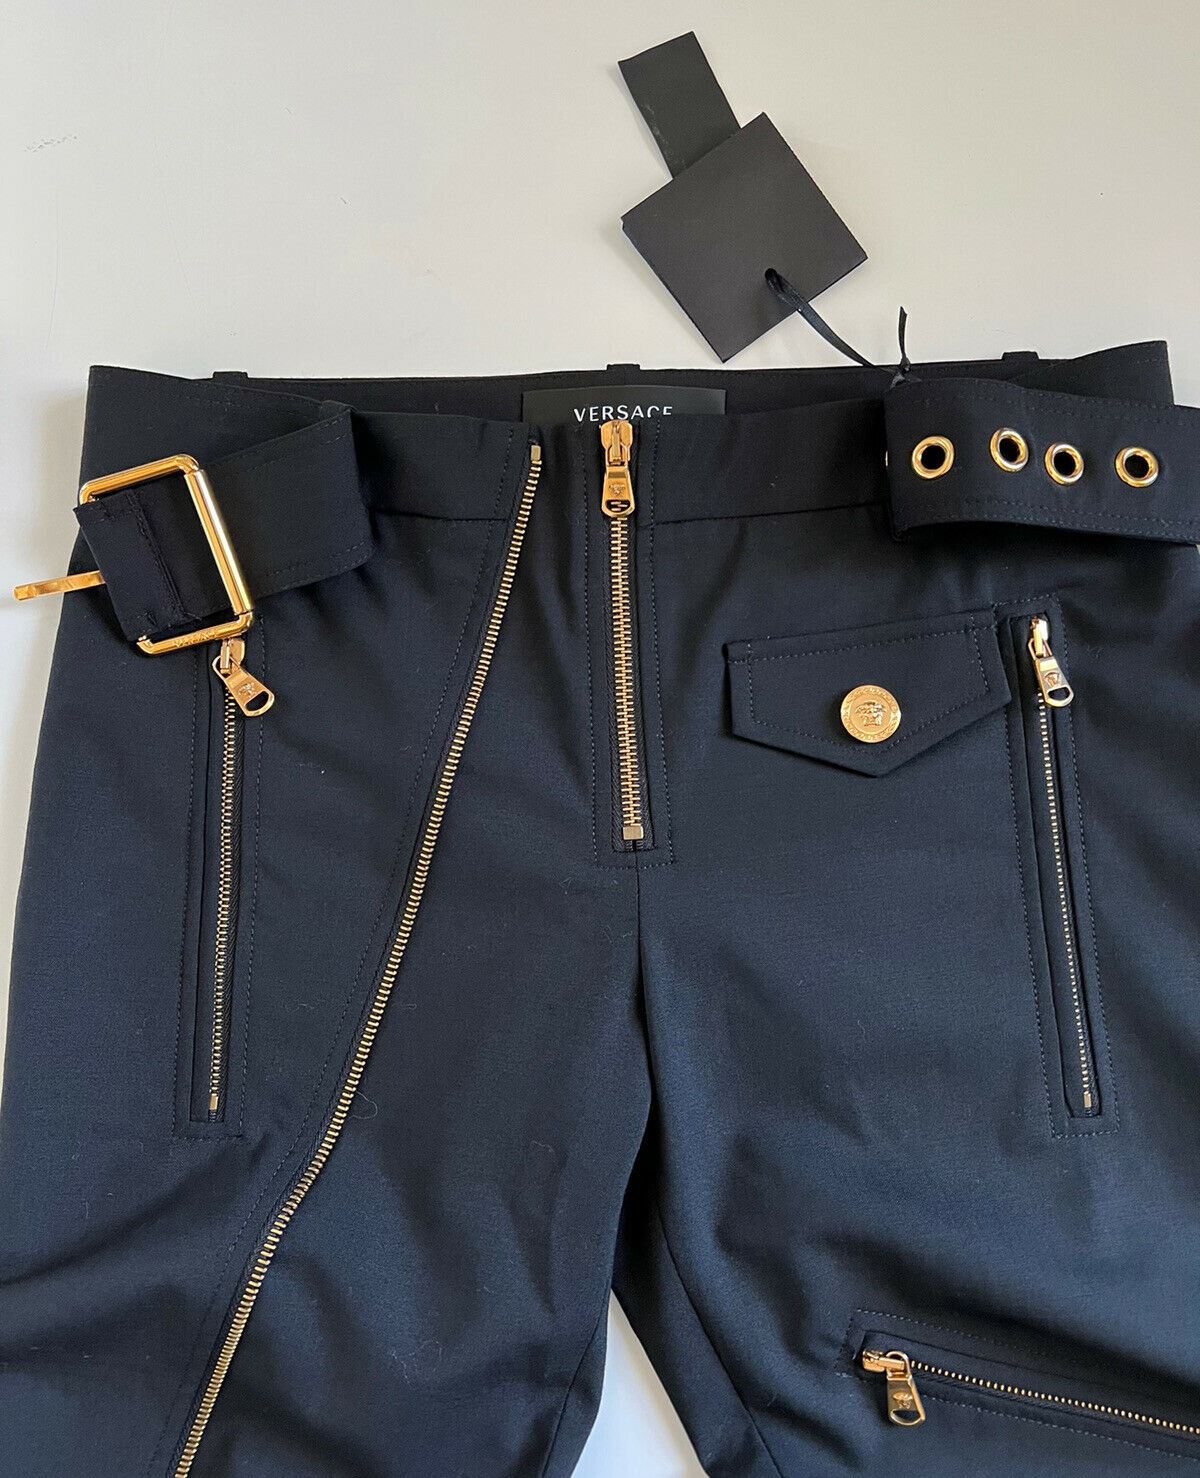 Женские черные шерстяные брюки с несколькими молниями NWT 1525 долларов США (38 евро) A87140 IT 